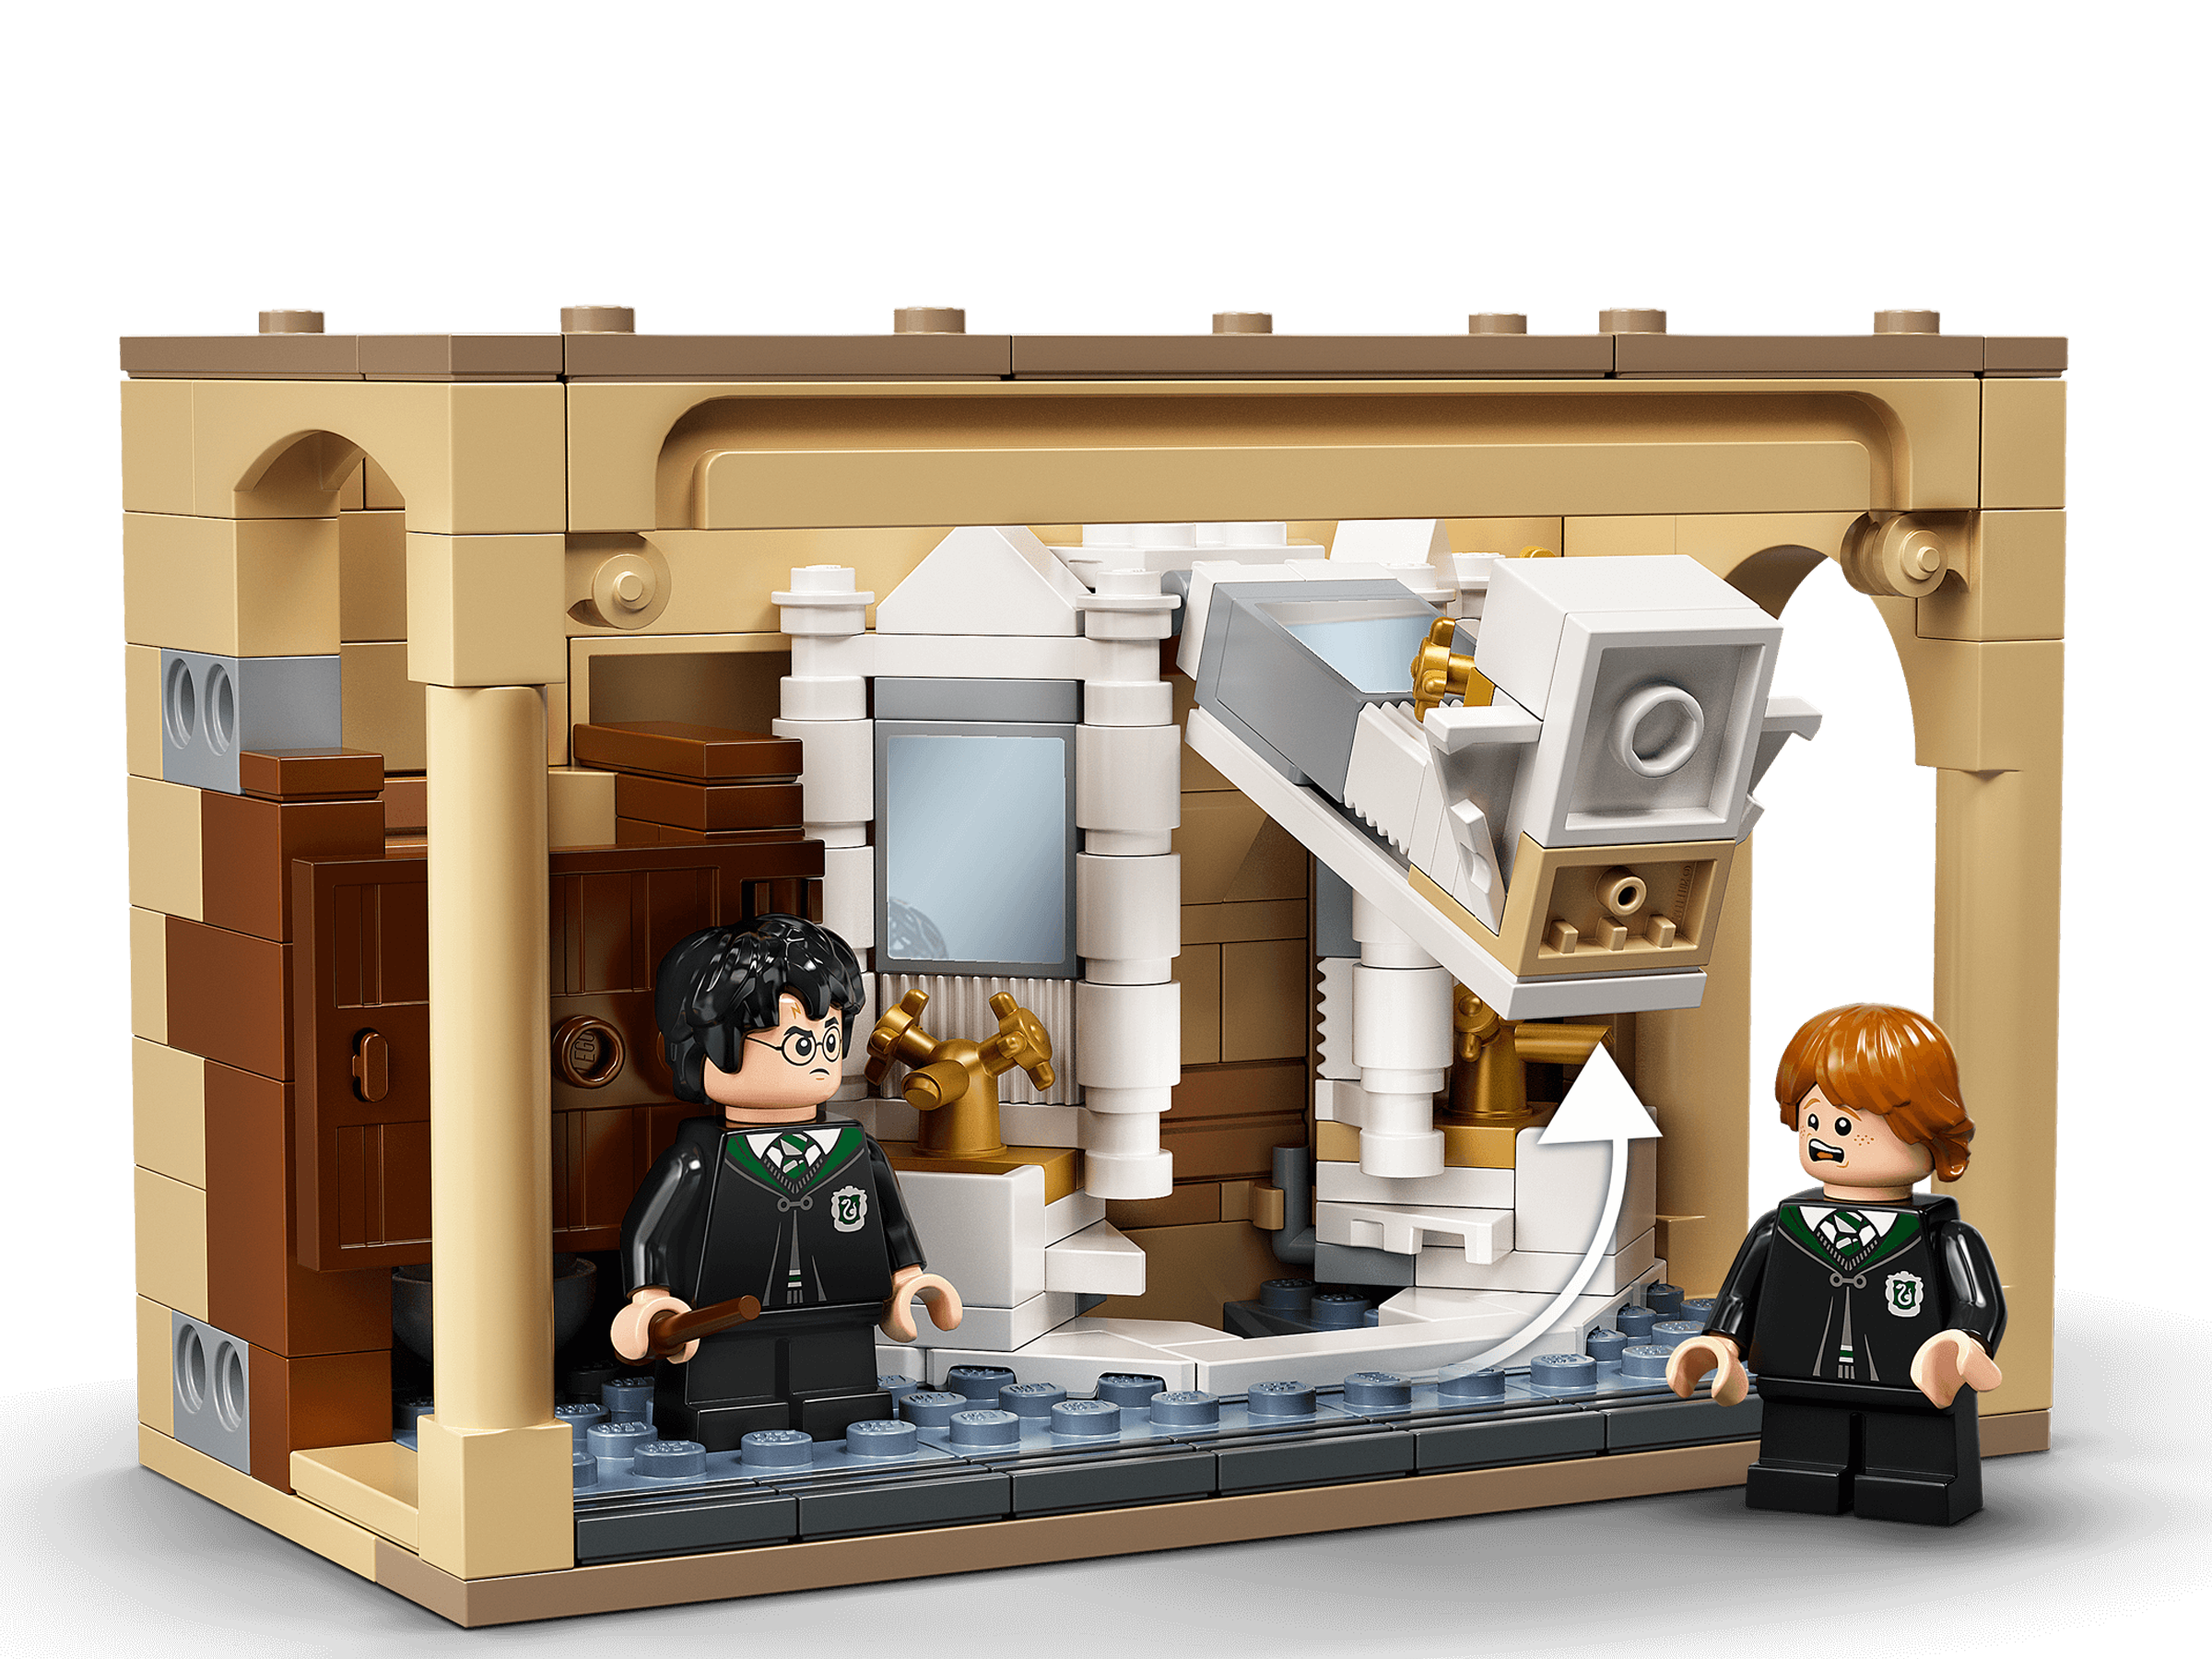 LEGO Harry Potter Years 1-4 A Câmara Secreta #9 Poção Polissuco